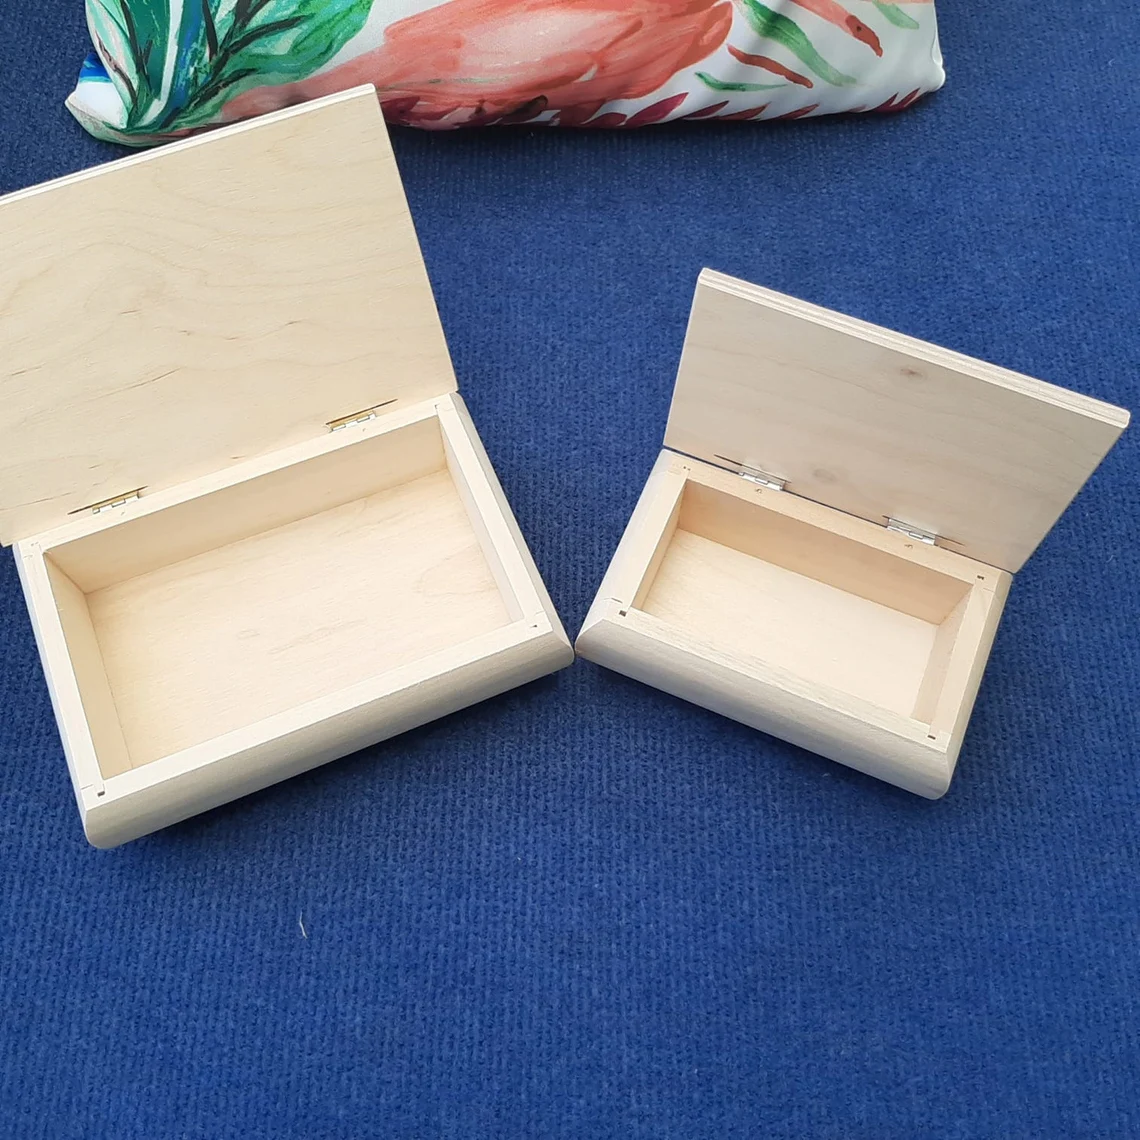 Blank Wooden Keepsake Box with Lid - Inside